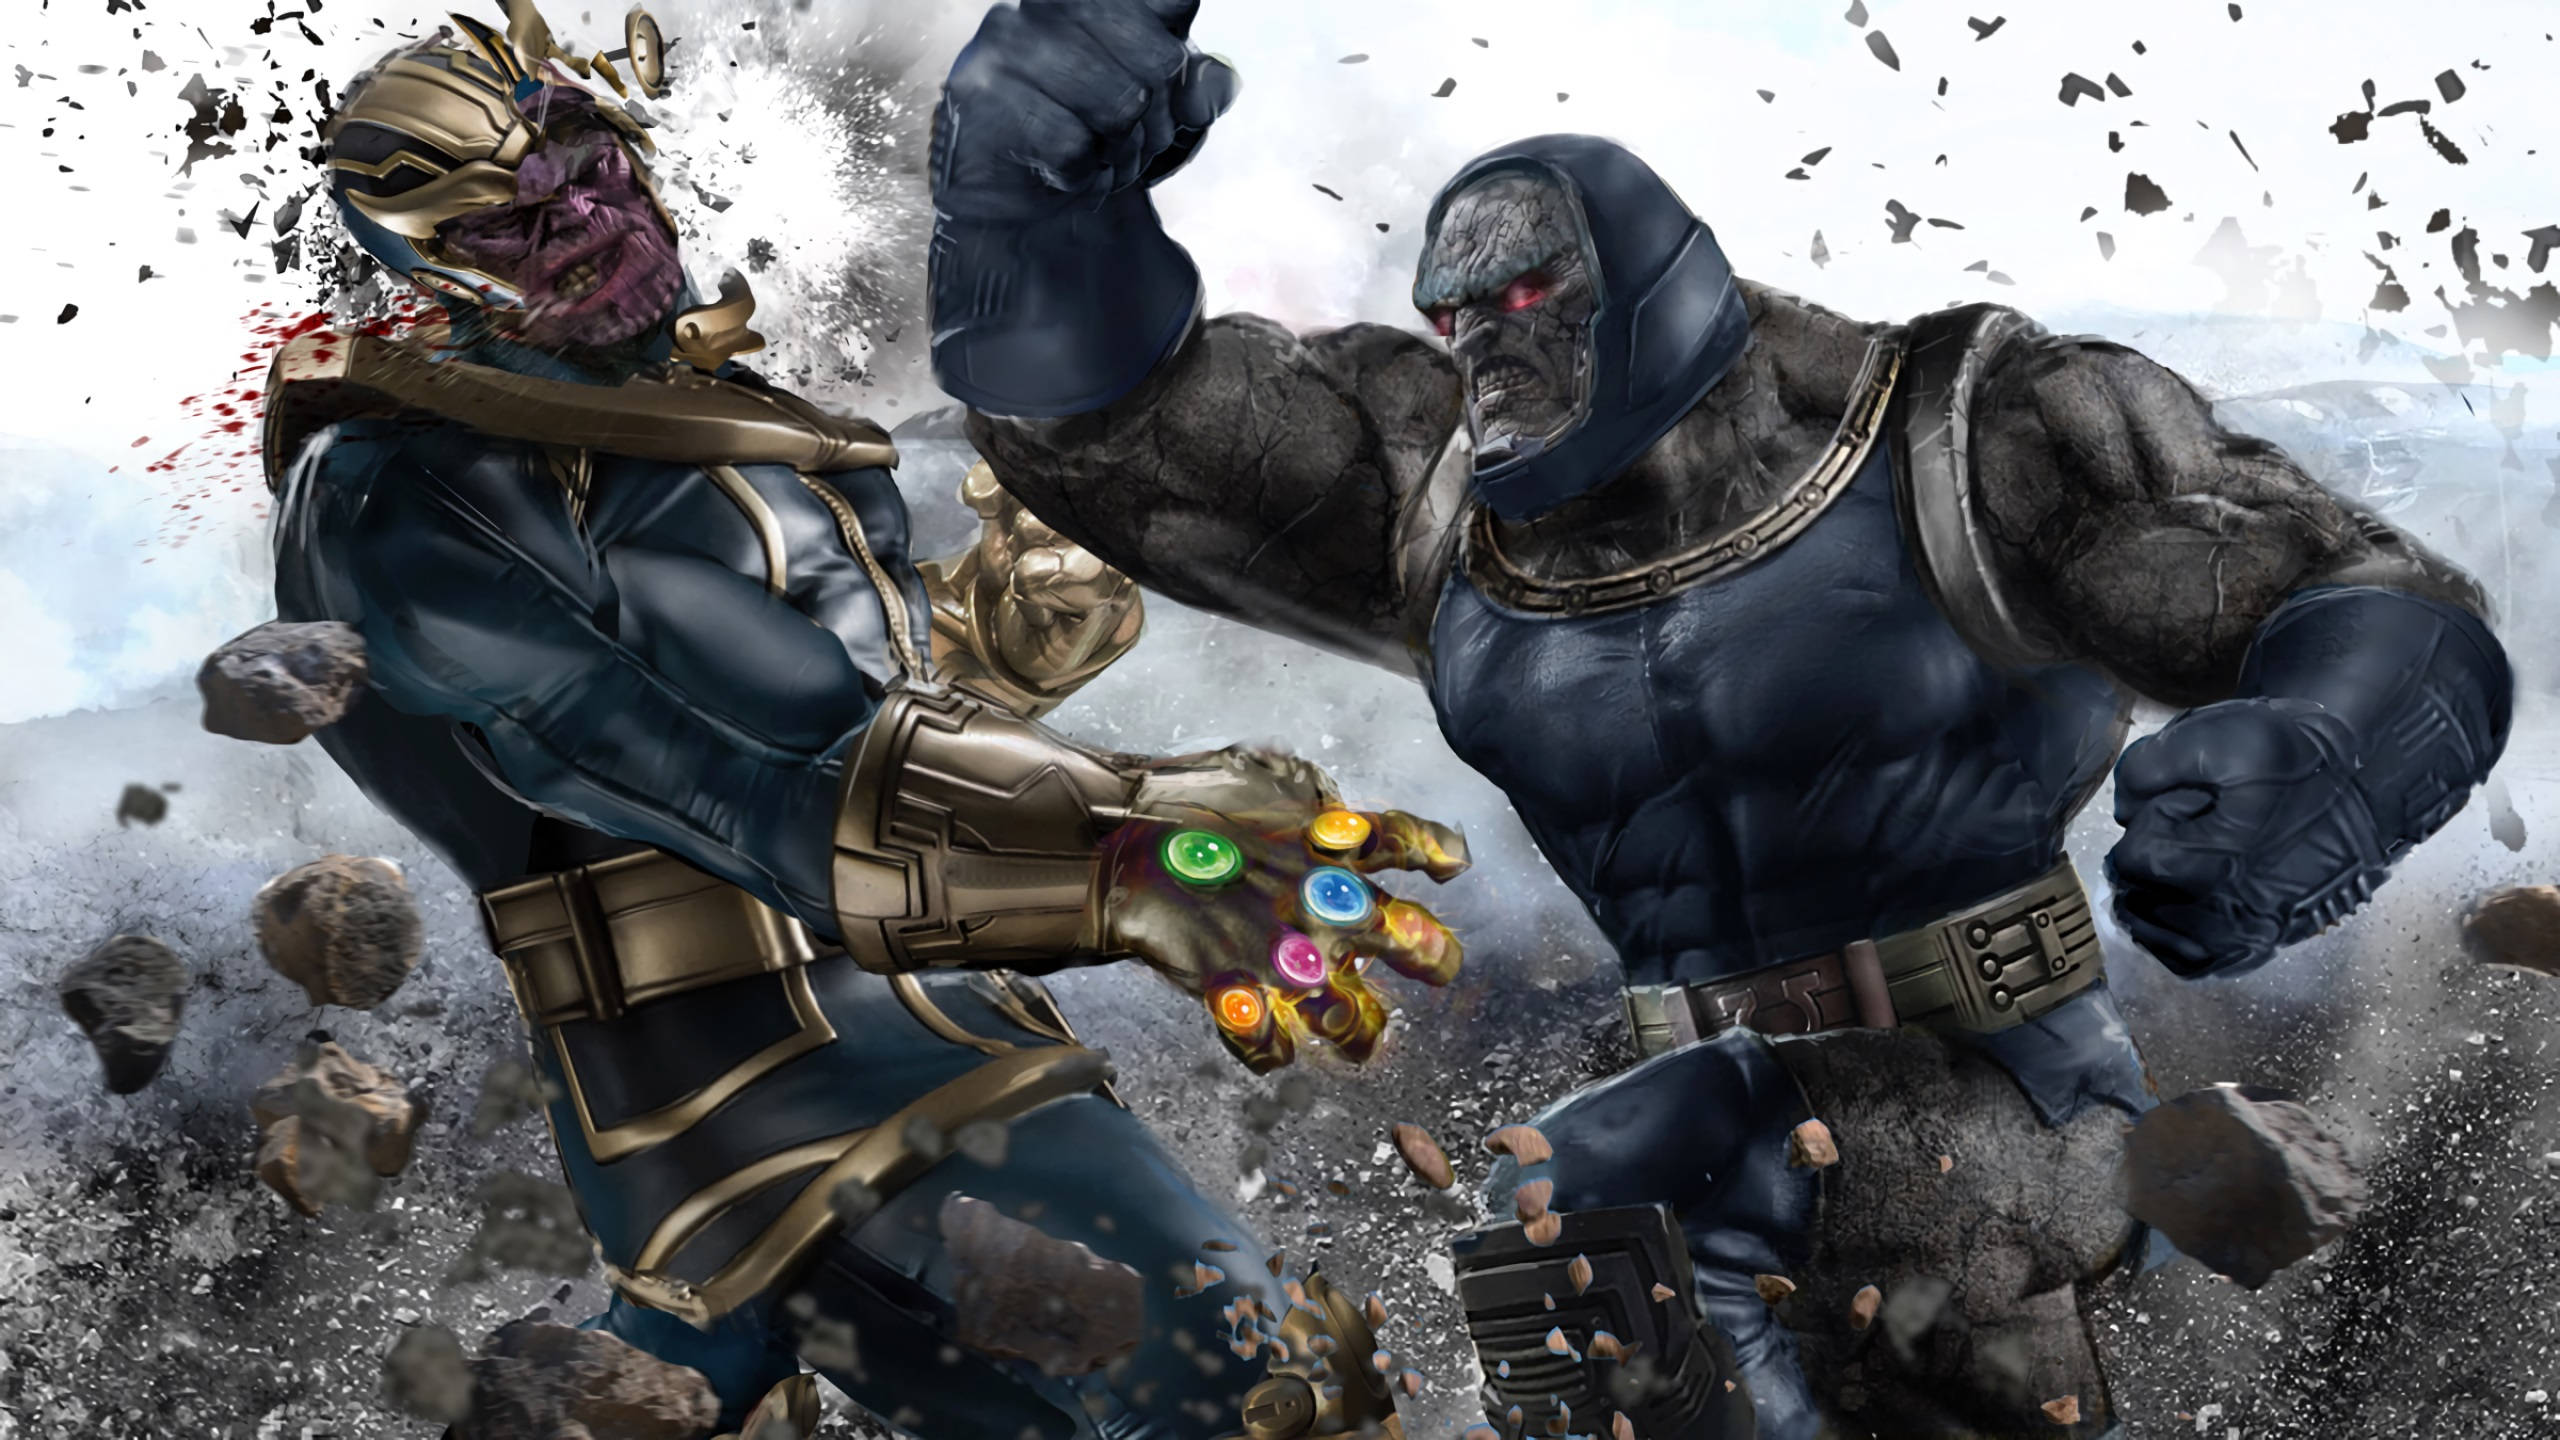 2560x1440 Marvel Thanos Vs Darkseid Background